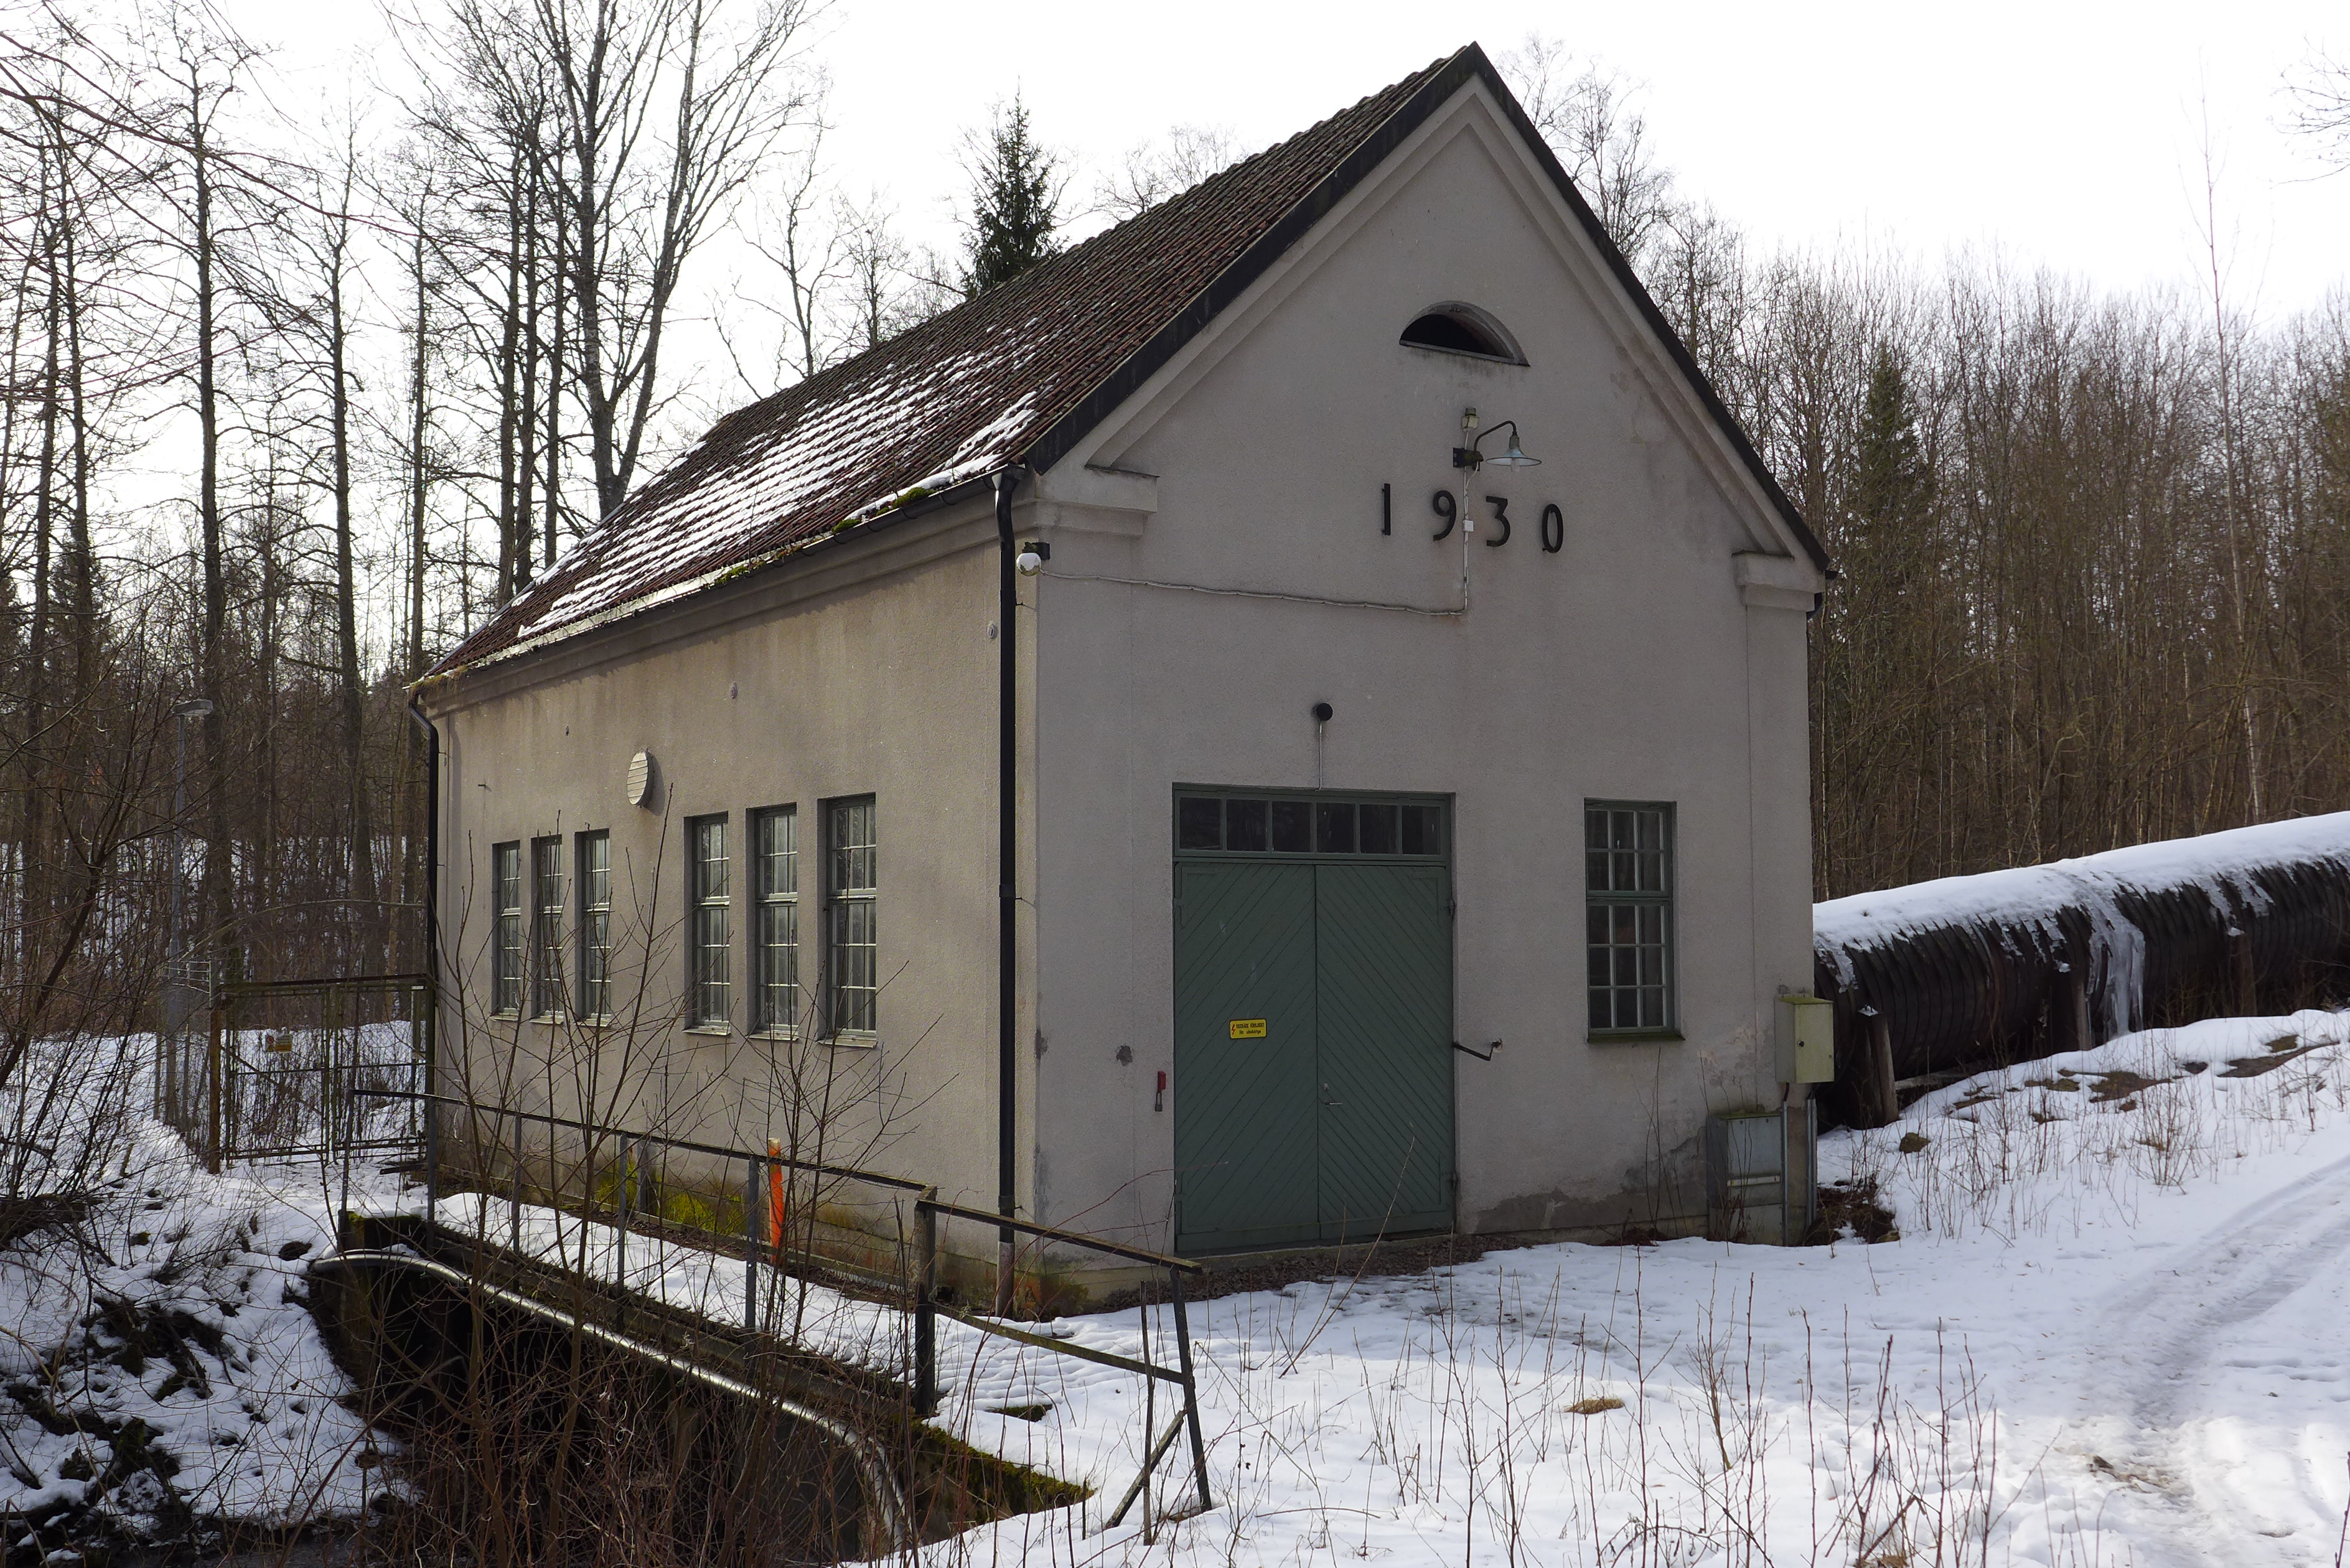 Korsbyns kraftverk byggdes 1930. 